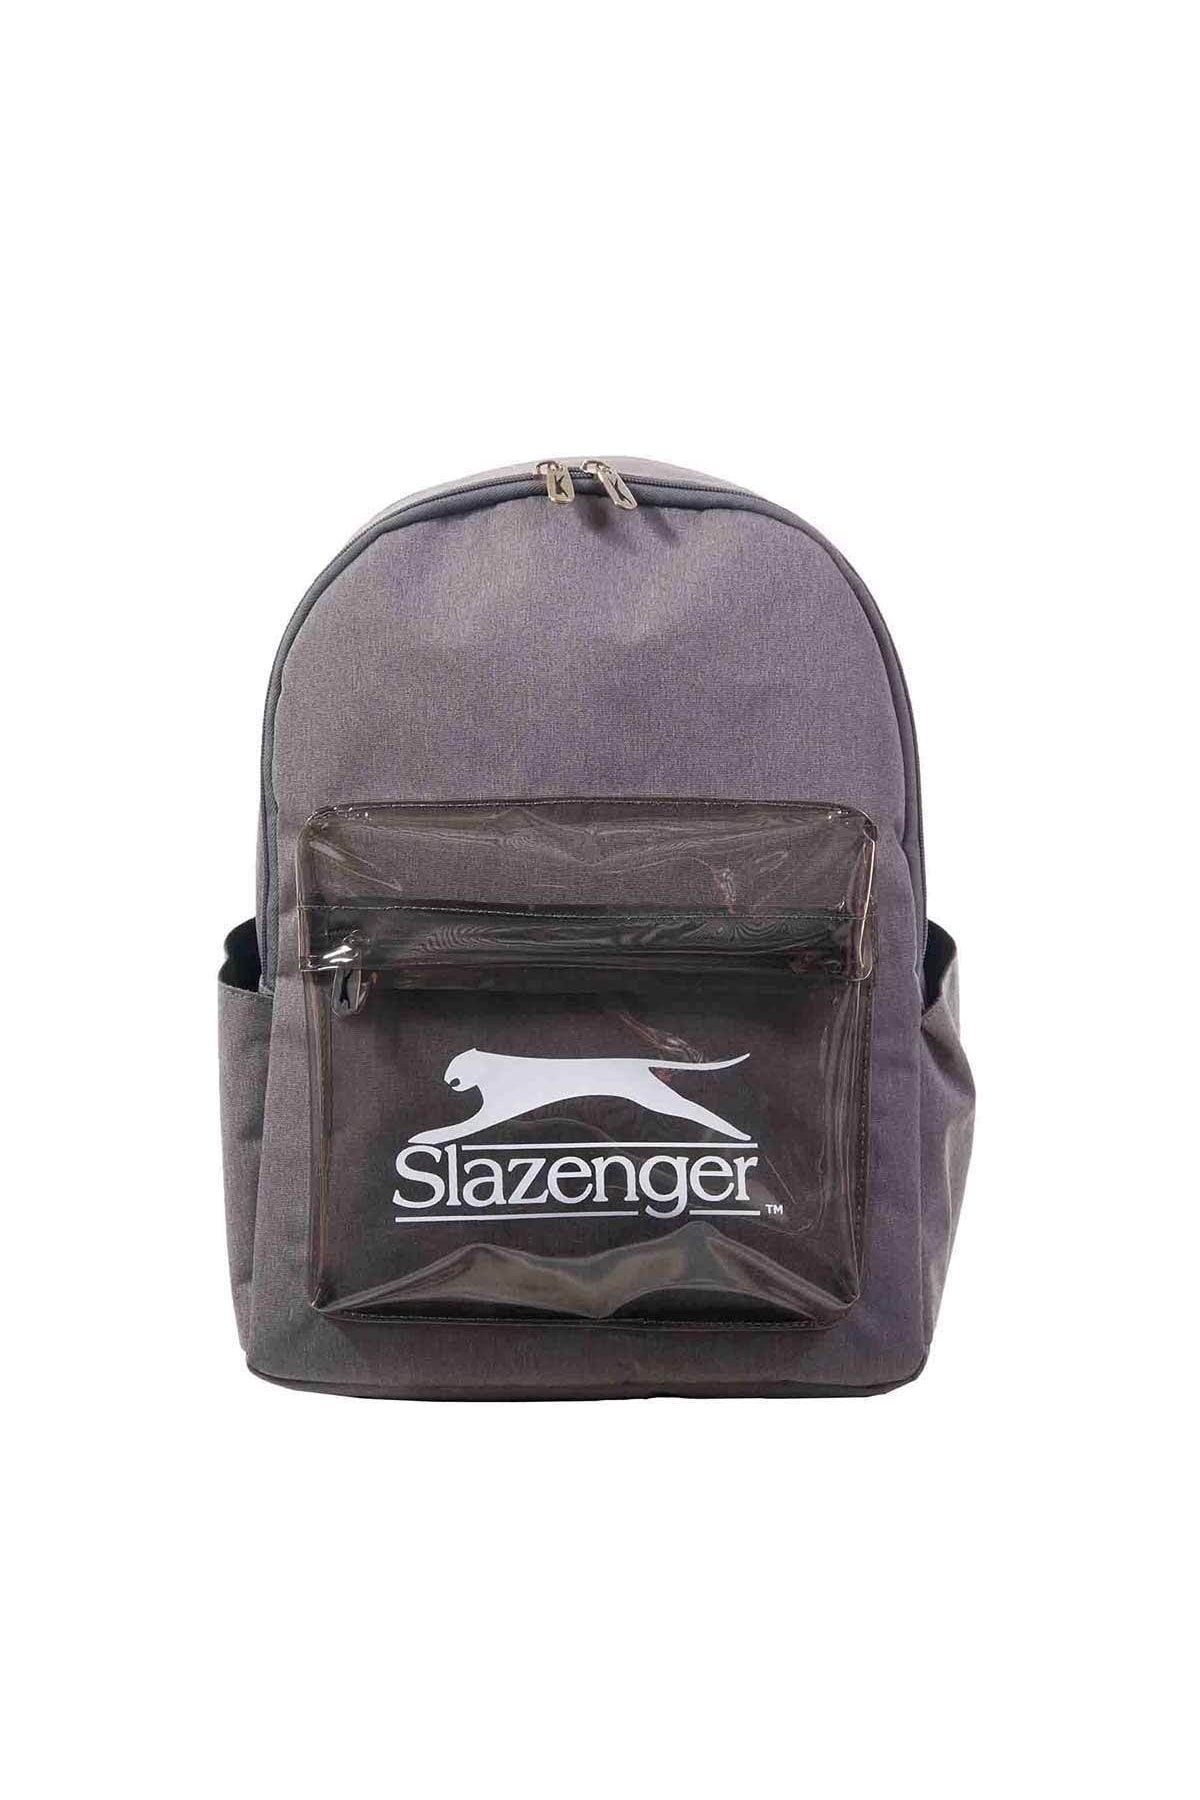 Slazenger Gri Okul Çantası 22142